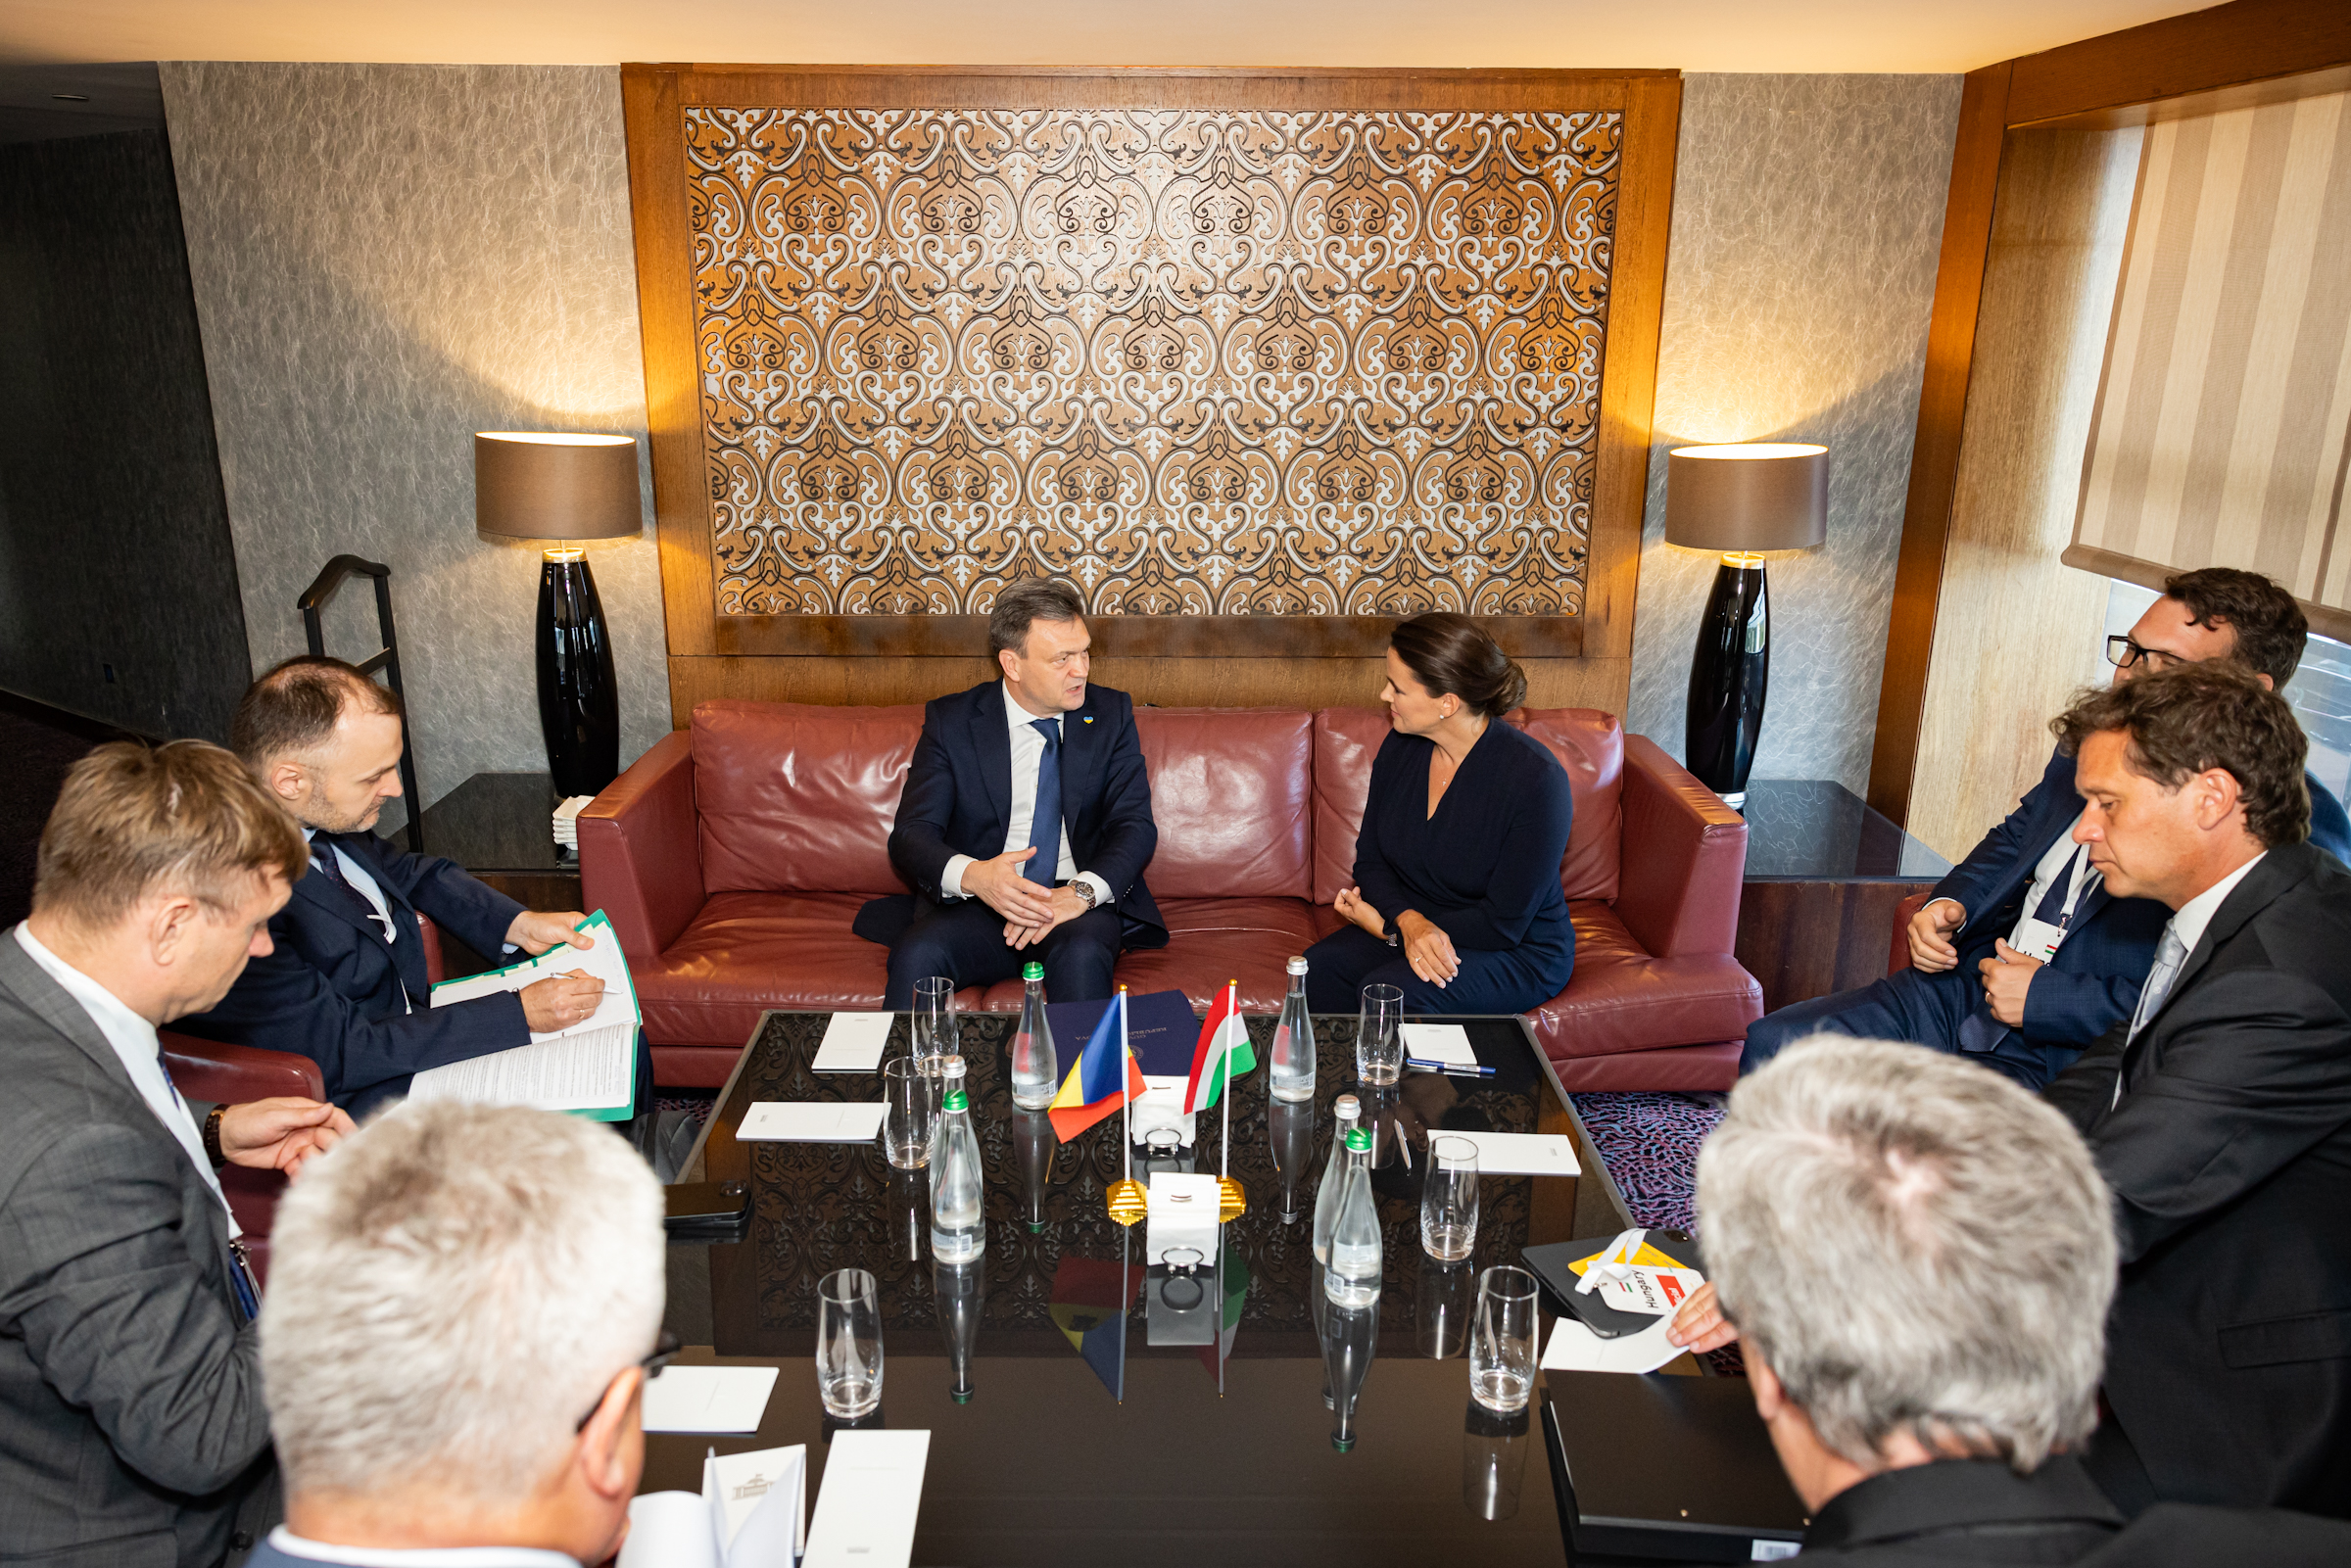 (ФОТО) Дорин Речан встретился с премьер-министром Финляндии и президентом Венгрии. Что они обсудили?